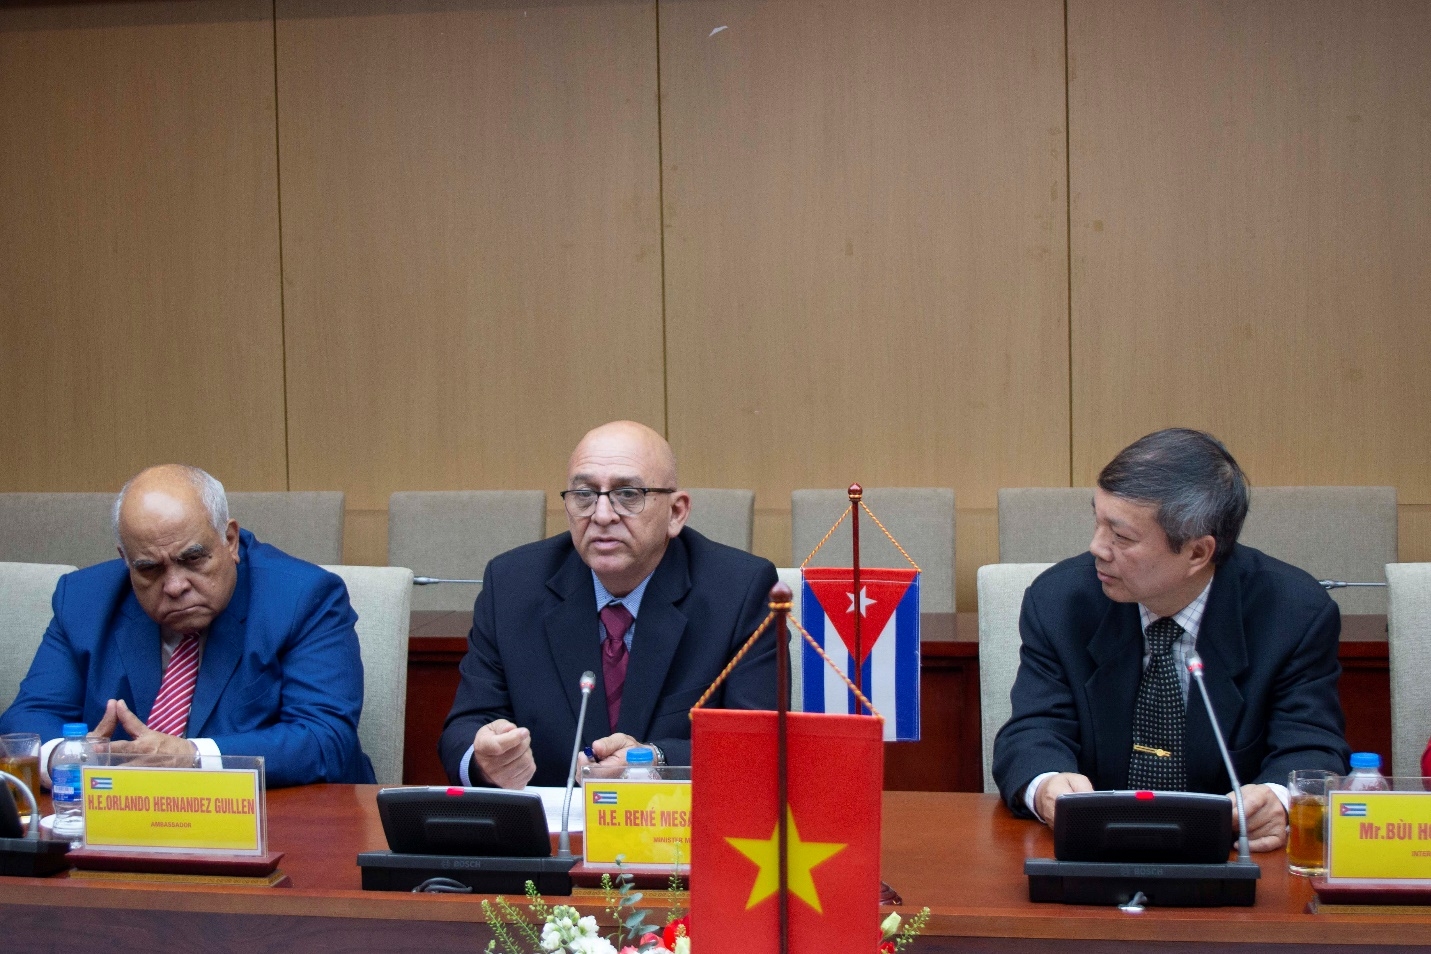 Hội đàm giữa hai Bộ trưởng Bộ Xây dựng Việt Nam và Cuba